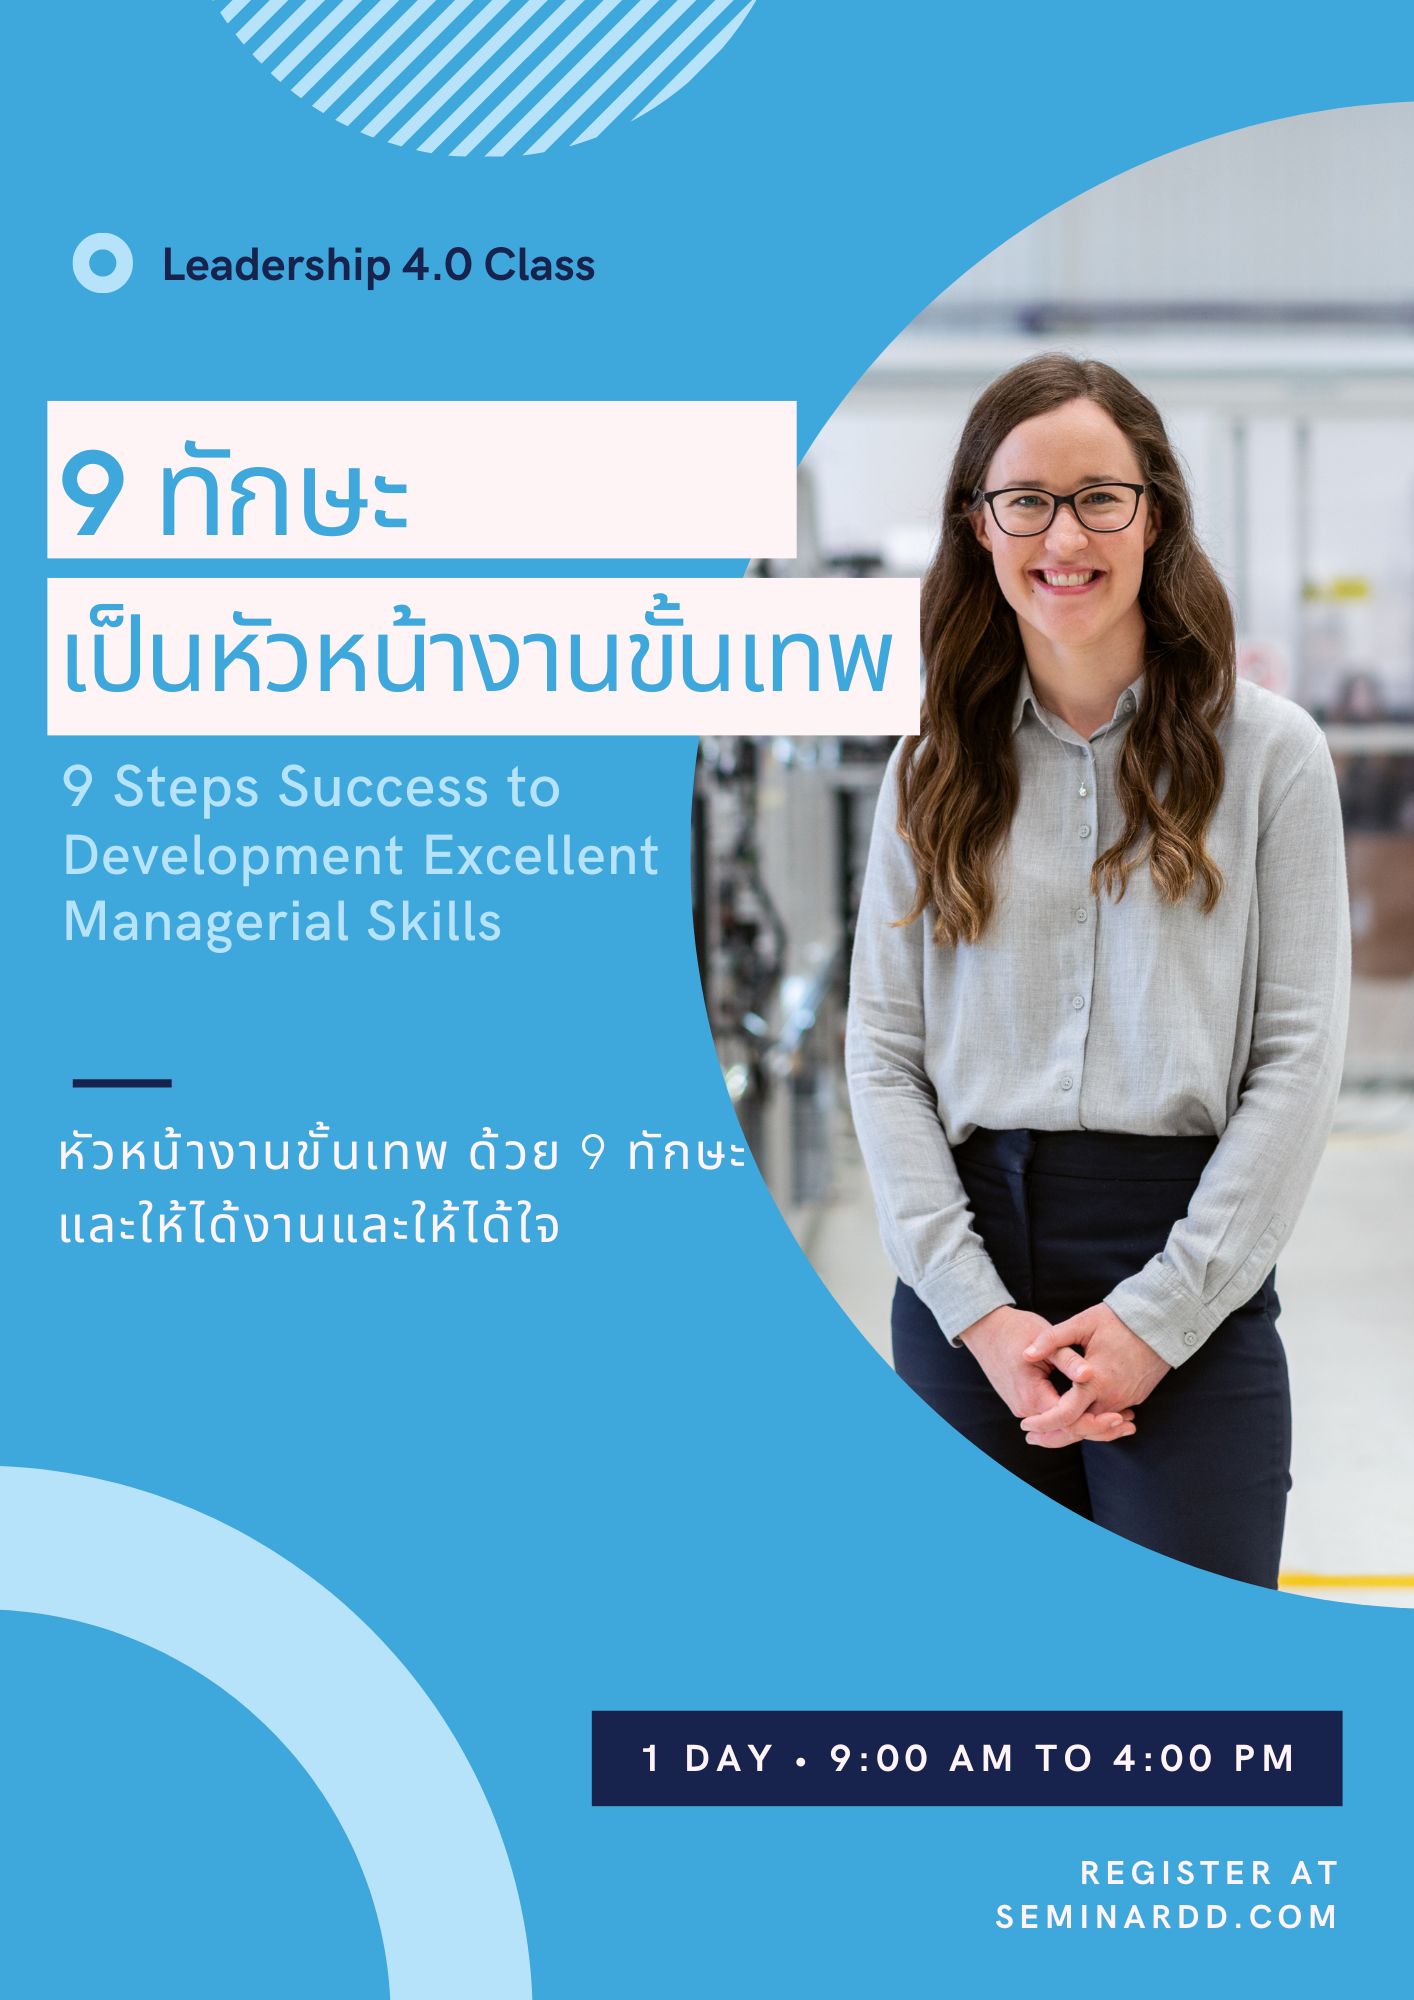 อบรม หลักสูตร 9 ทักษะความสำเร็จเพื่อยกระดับการเป็นหัวหน้างานขั้นเทพ (9 Steps Success to Development Excellent Managerial Skills) อบรมในรูปแบบ Classroom